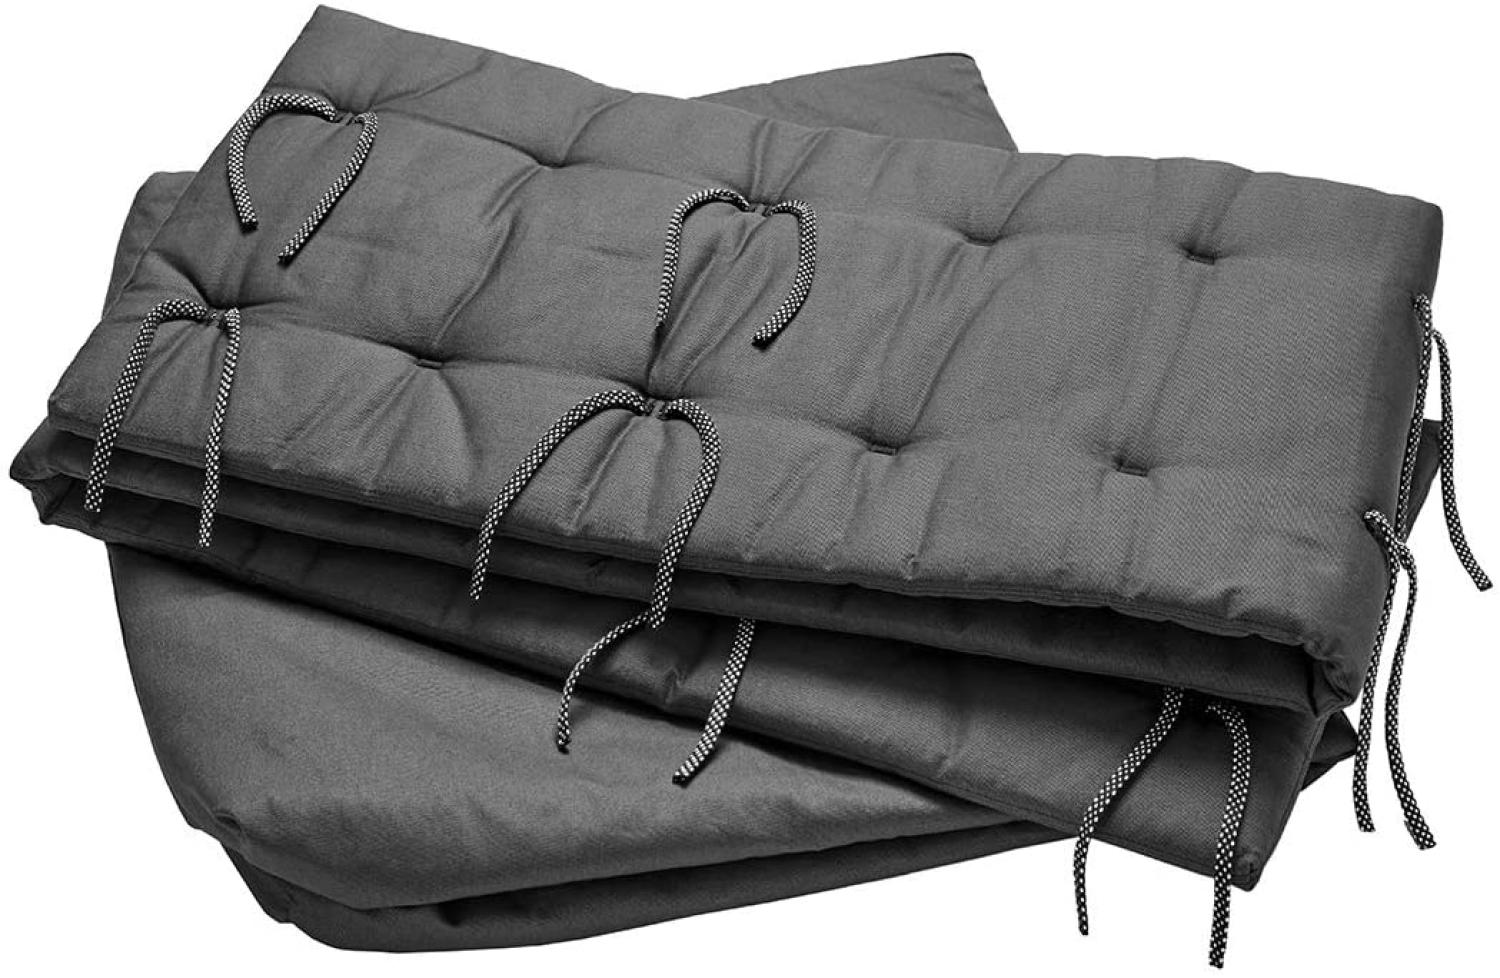 Sofa-Set für Linea und Luna Babybett 120 cm in der Farbe cool grey Bild 1